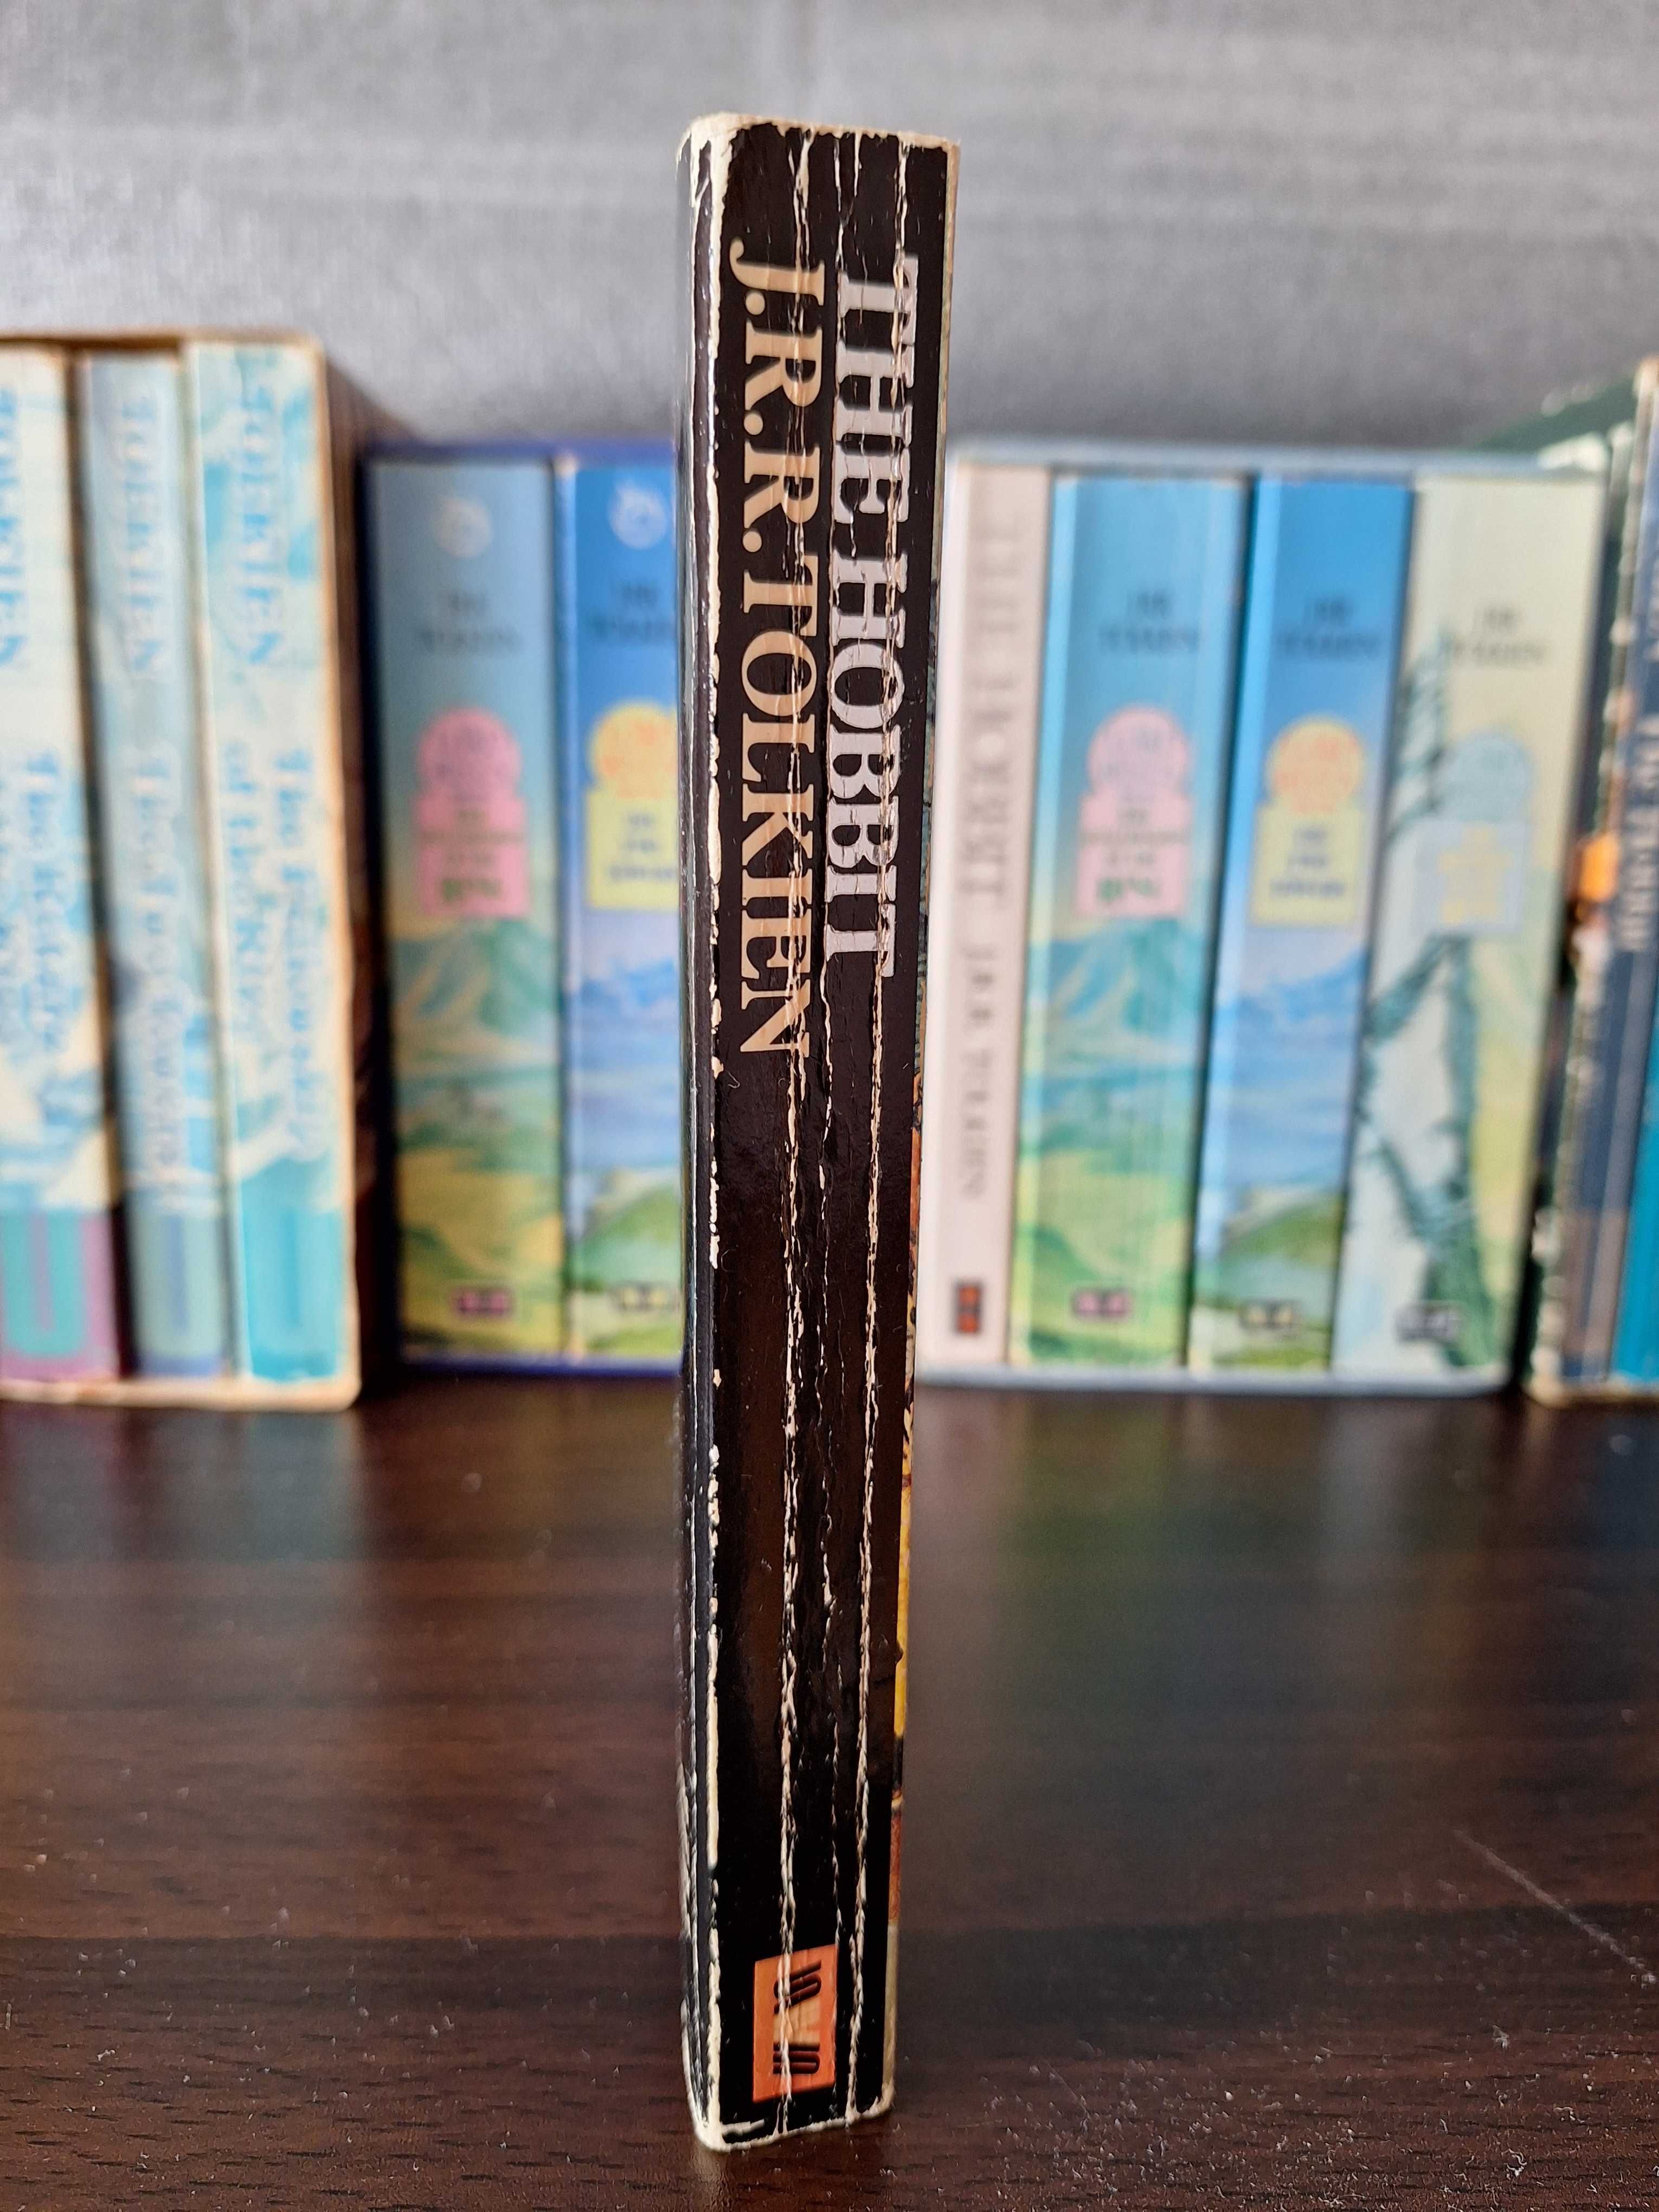 The Hobbit livro (1981)